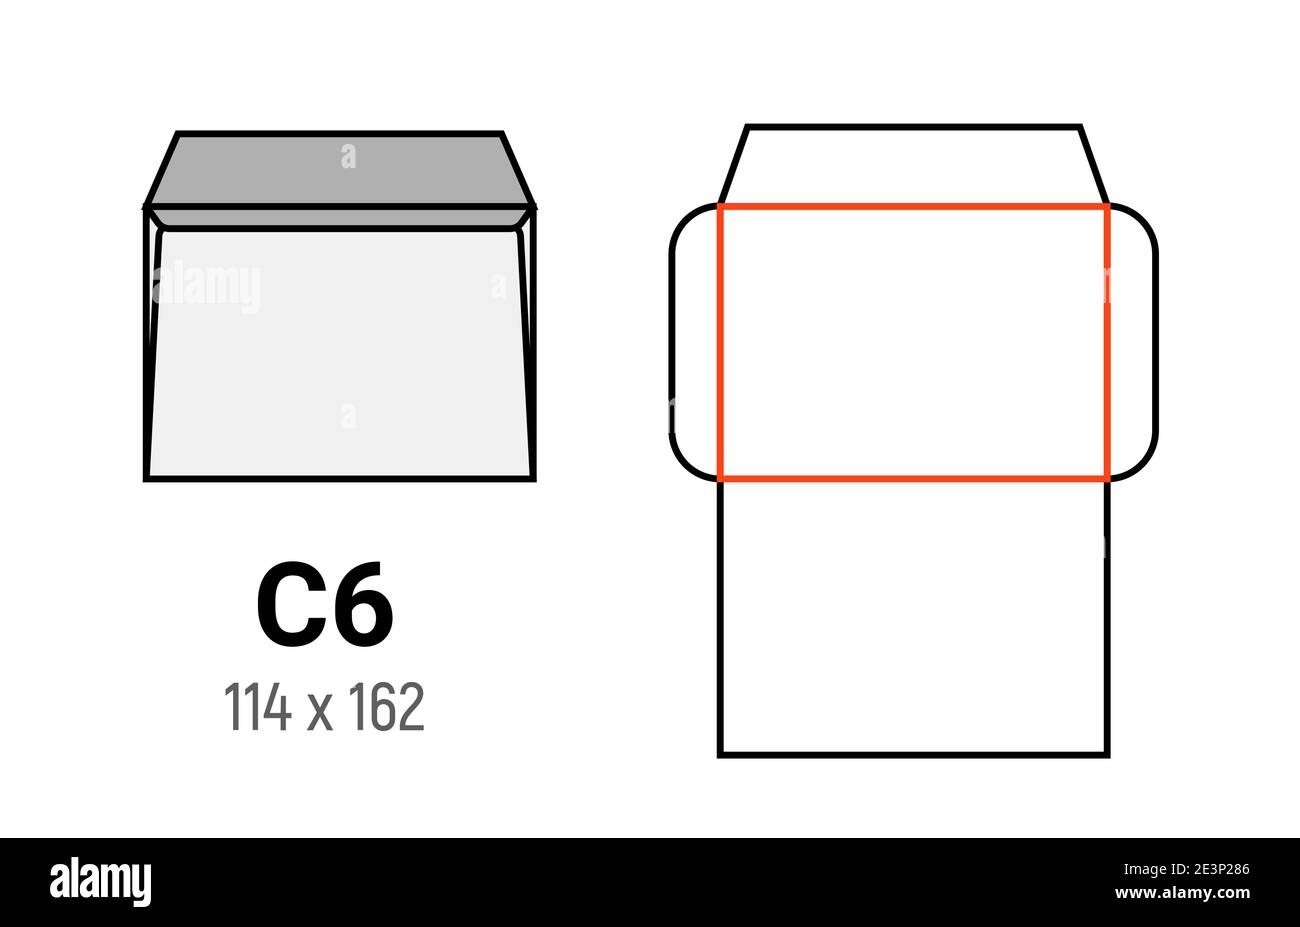 C6 Umschlag Mockup a6 weiße Schablone Zuschnitt Größe Stock Vektor